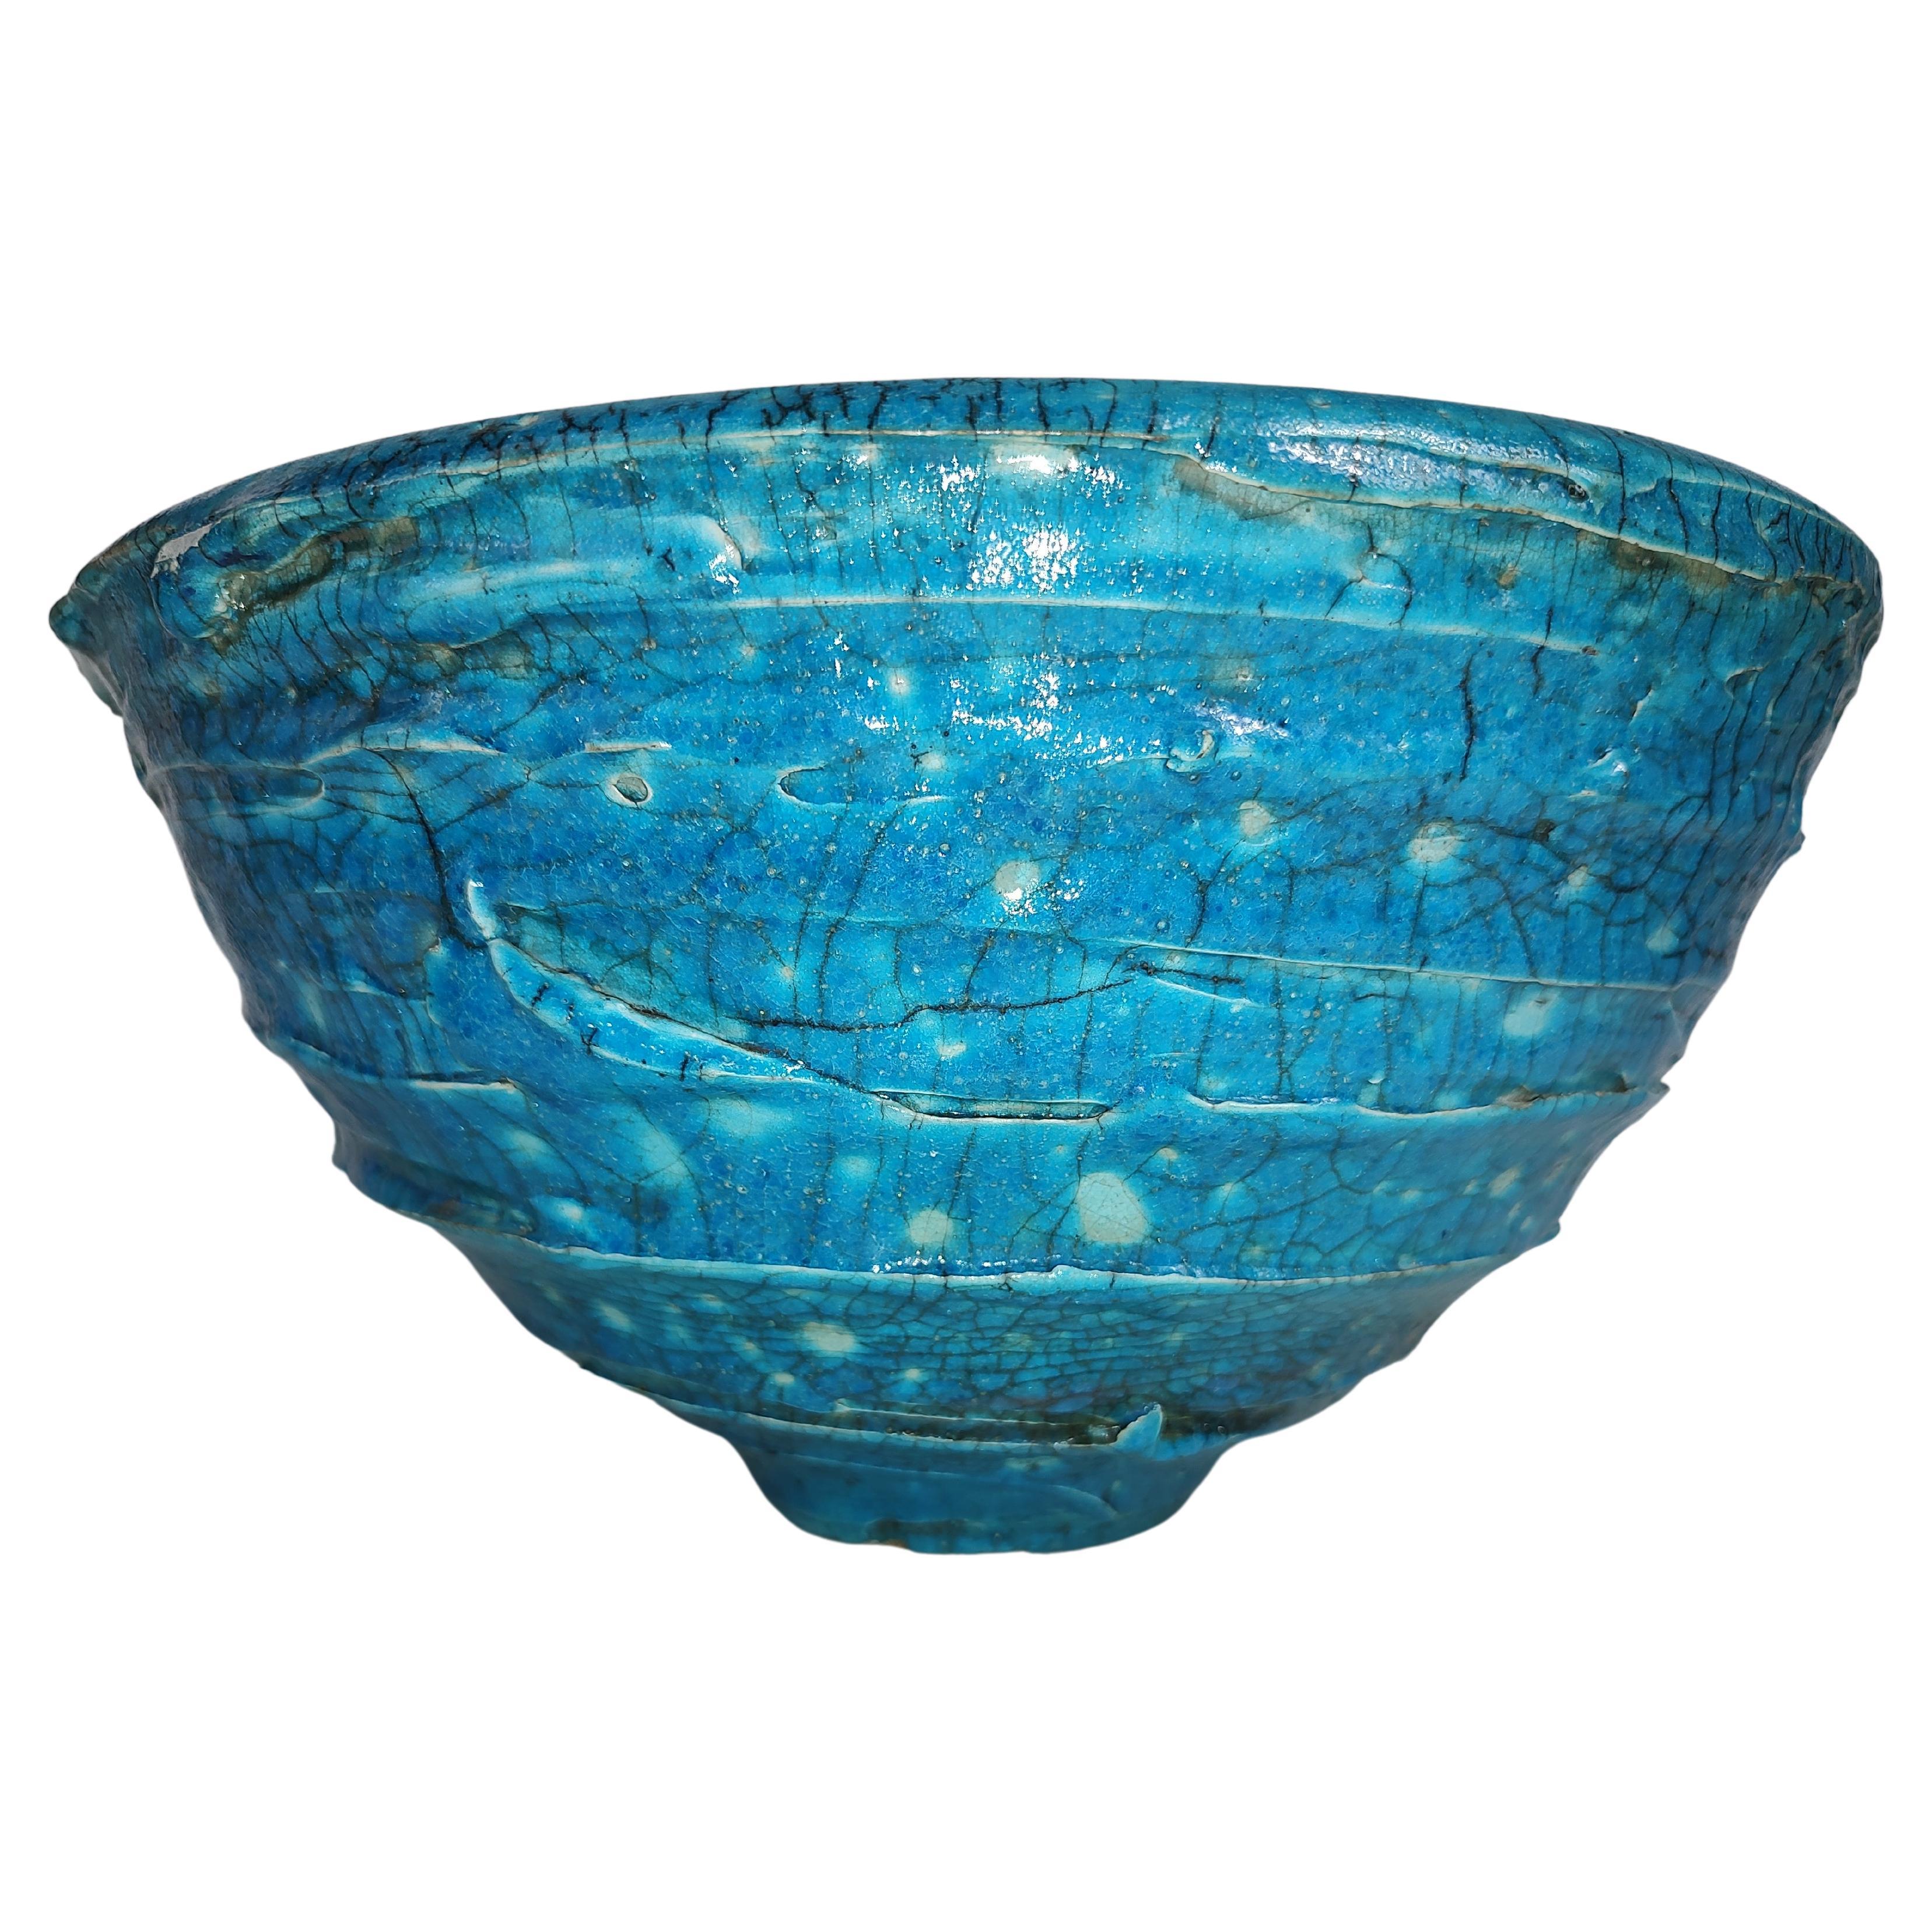 Grand bol sculptural moderne du milieu du siècle dernier en poterie d'art bleu turquoise en vente